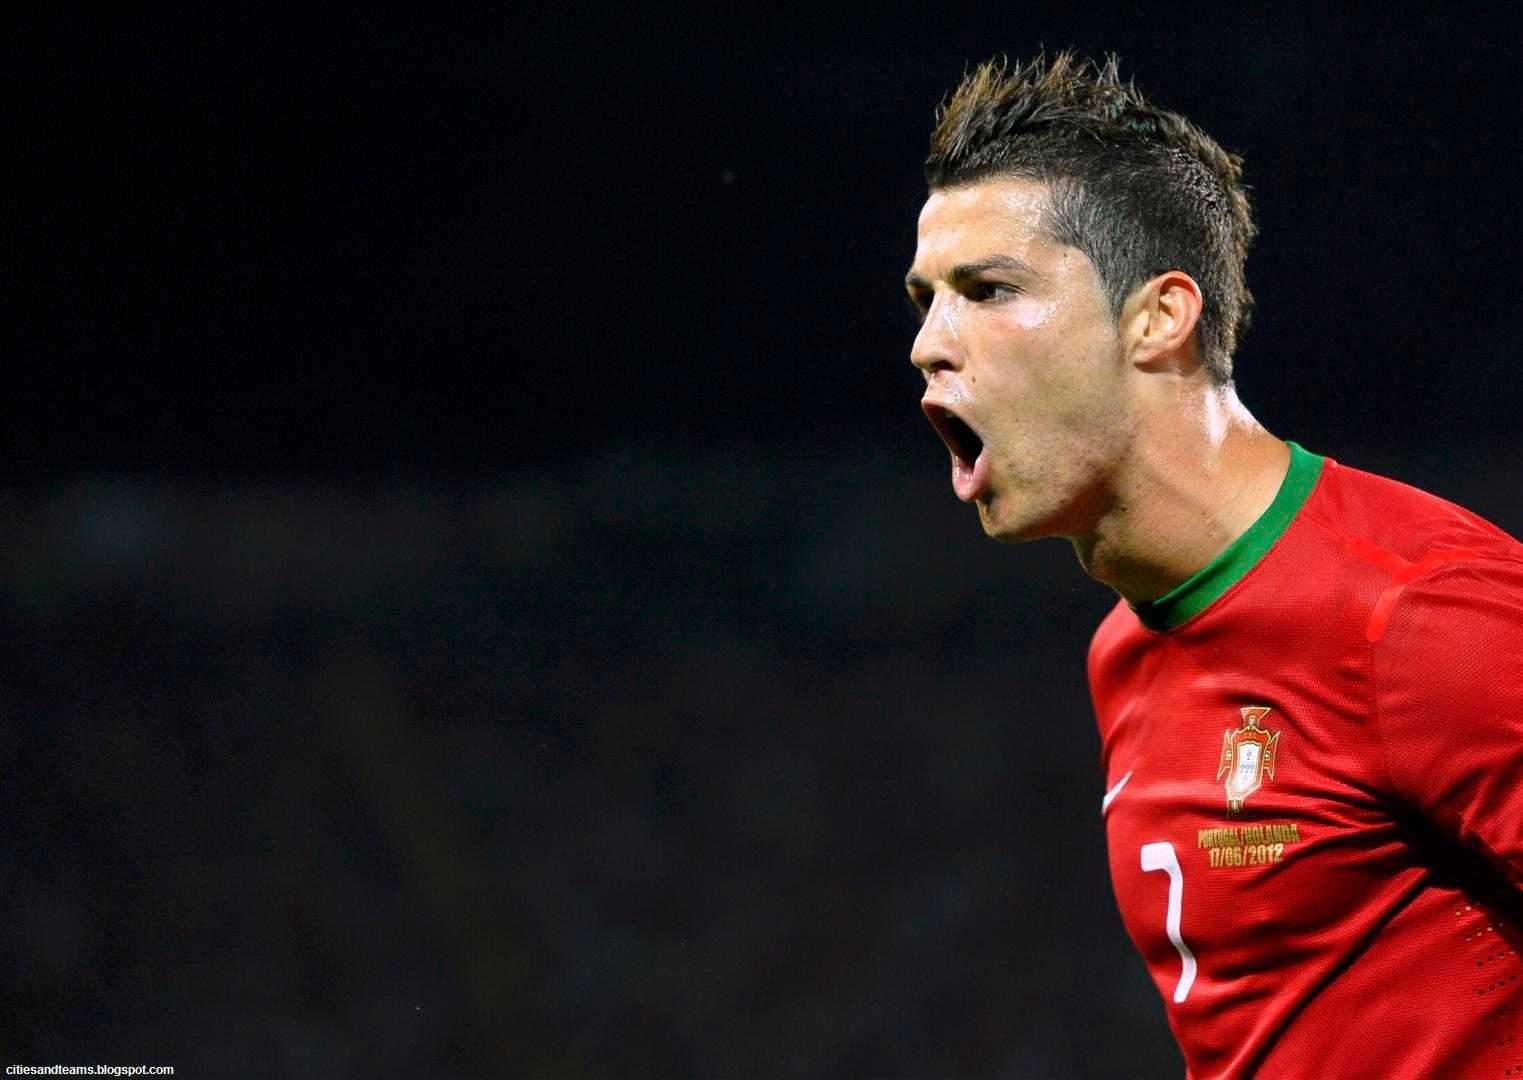 Cristiano Ronaldo HD Wallpaper 2018 Image Background Top Cr Latest